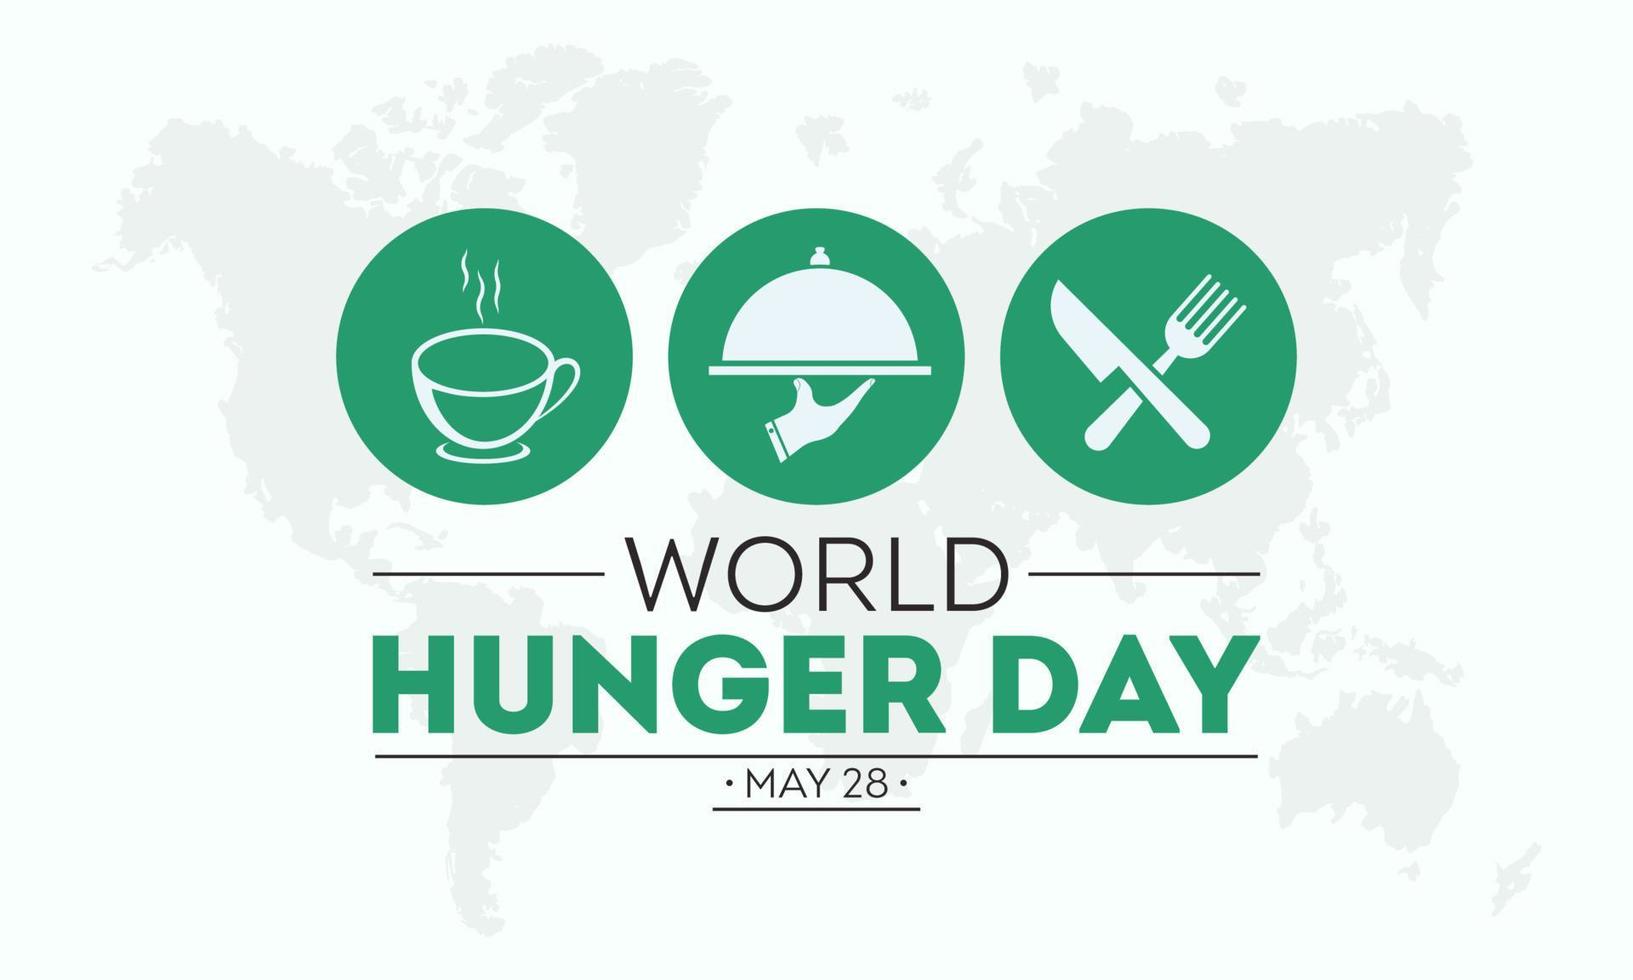 mundo hambre día es observado cada año en 28 mayo. vector ilustración en el tema de mundo hambre día comida prevención y conciencia vector concepto.